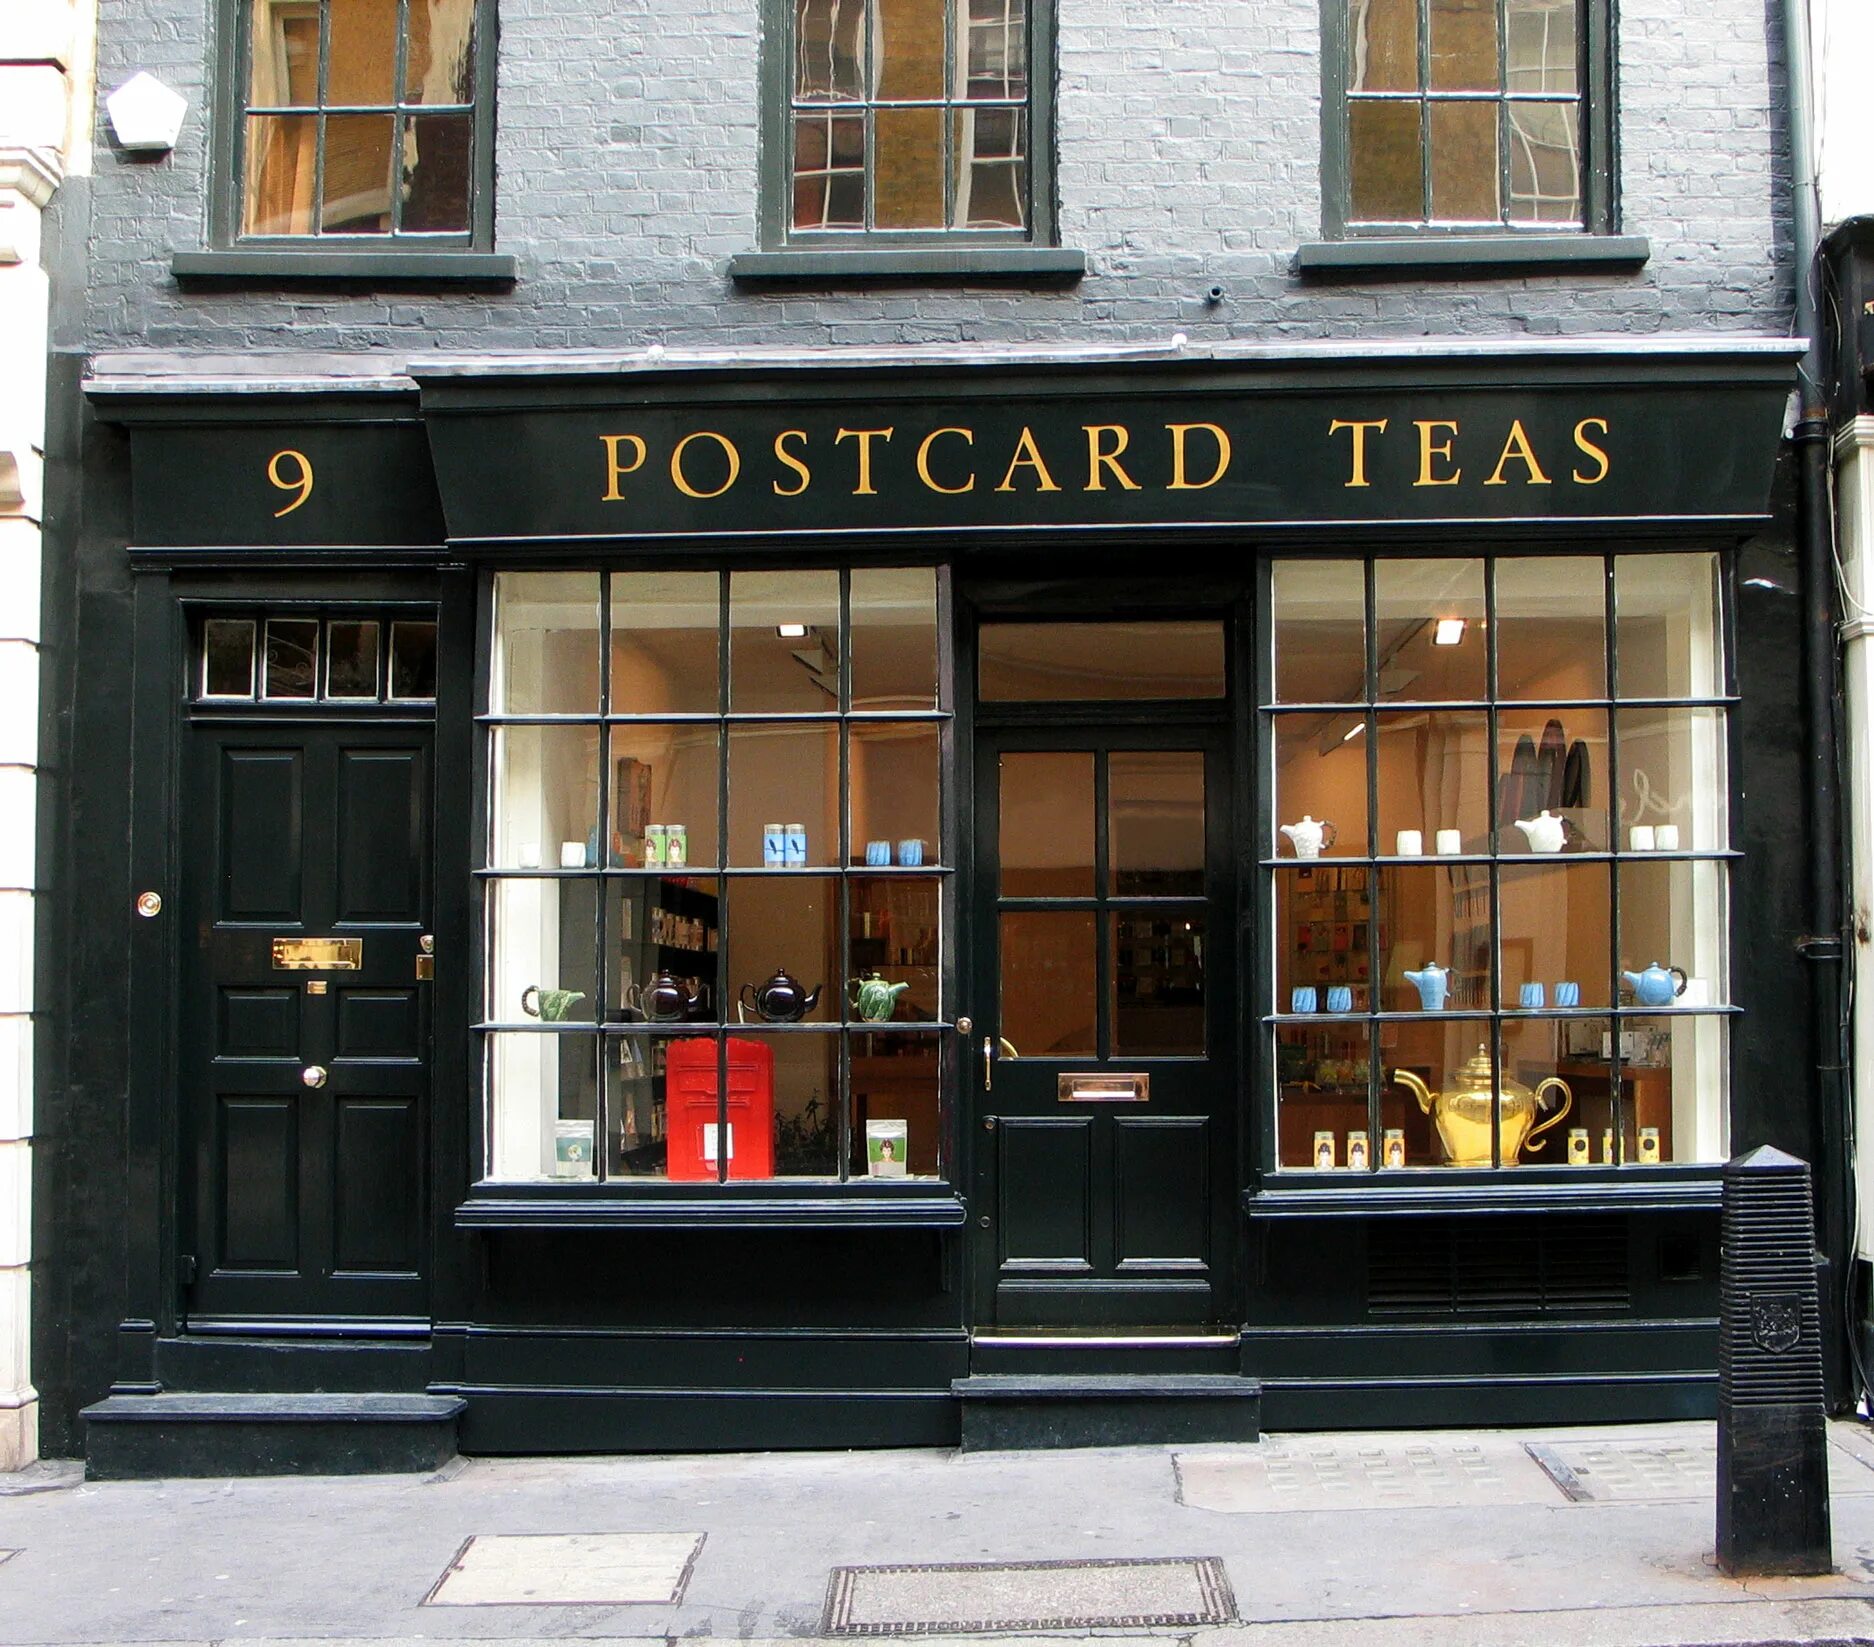 Первый чайный магазин в Англии золотой Лев. Первый магазин чая в Англии Twinings. Первый магазин чая в Англии 1717. Кафе «Tea-shops» в Лондоне. Магазин английских товаров